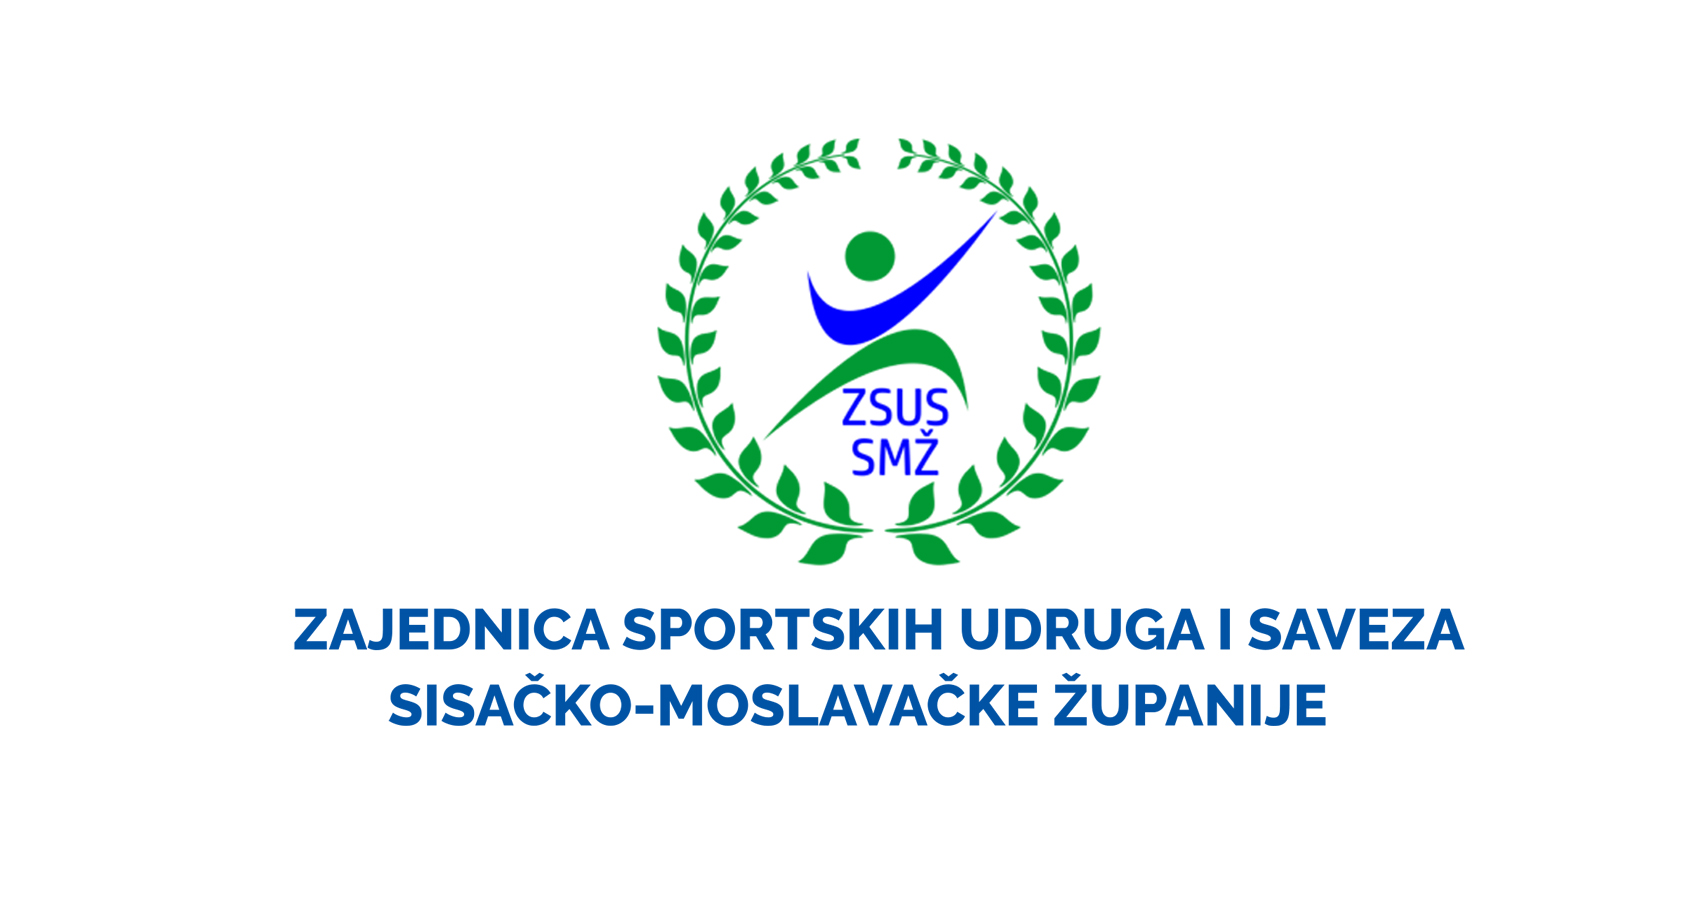 Zajednica sportskih udruga i saveza Sisačko-moslavačke županije objavila je Javni poziv za prikupljanje prijedloga za potpore kategoriziranim sportašicama i sportašima s područja Sisačko-moslavačke županije za 2023. godinu.